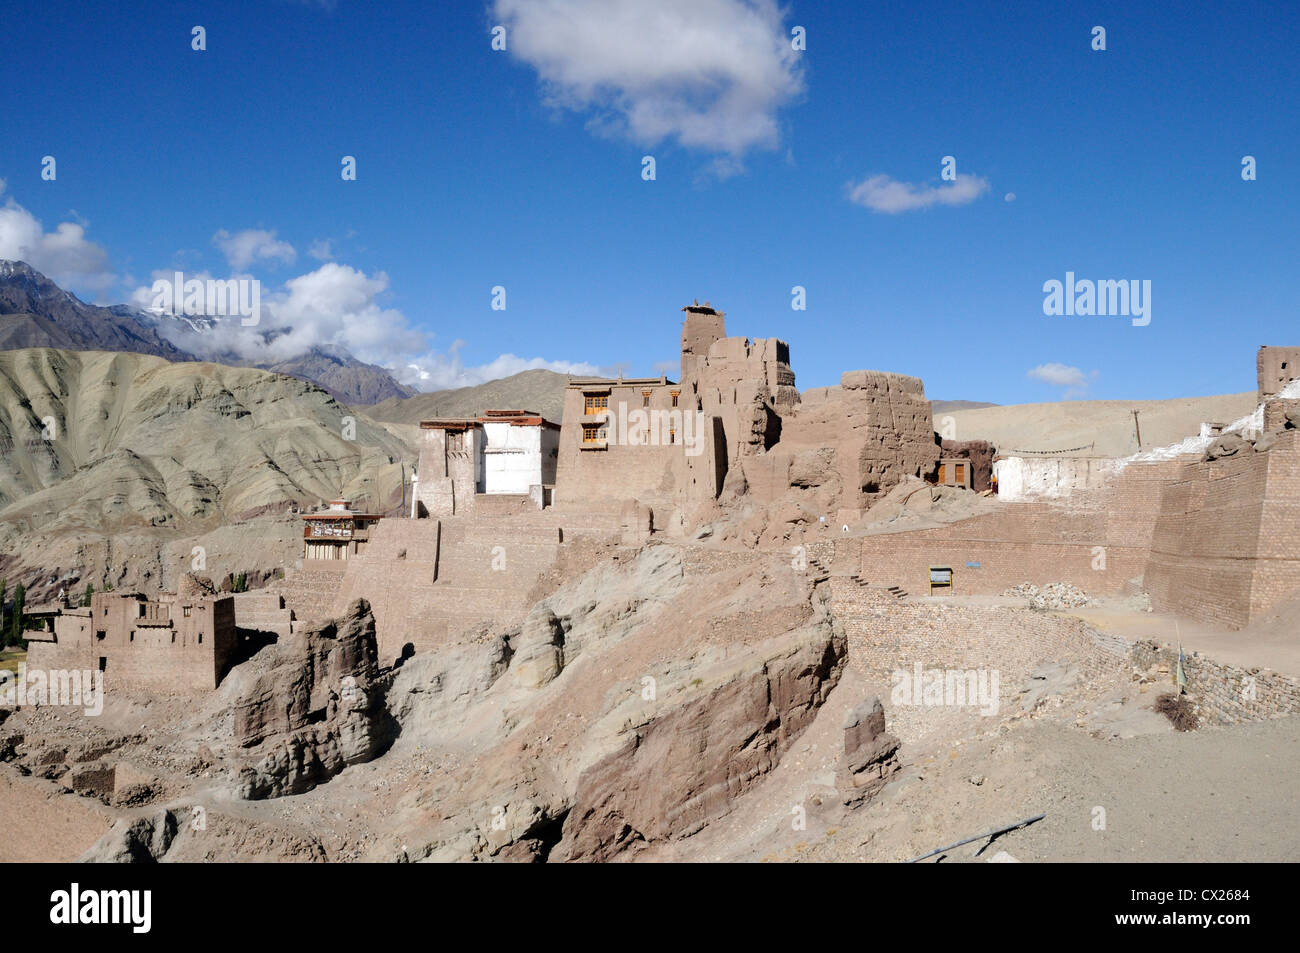 Le xvie siècle en ruine du palais royal et forteresse à Basgo avec le blanc Chamba Lhakhang temple. Basgo, Ladakh, Inde Banque D'Images